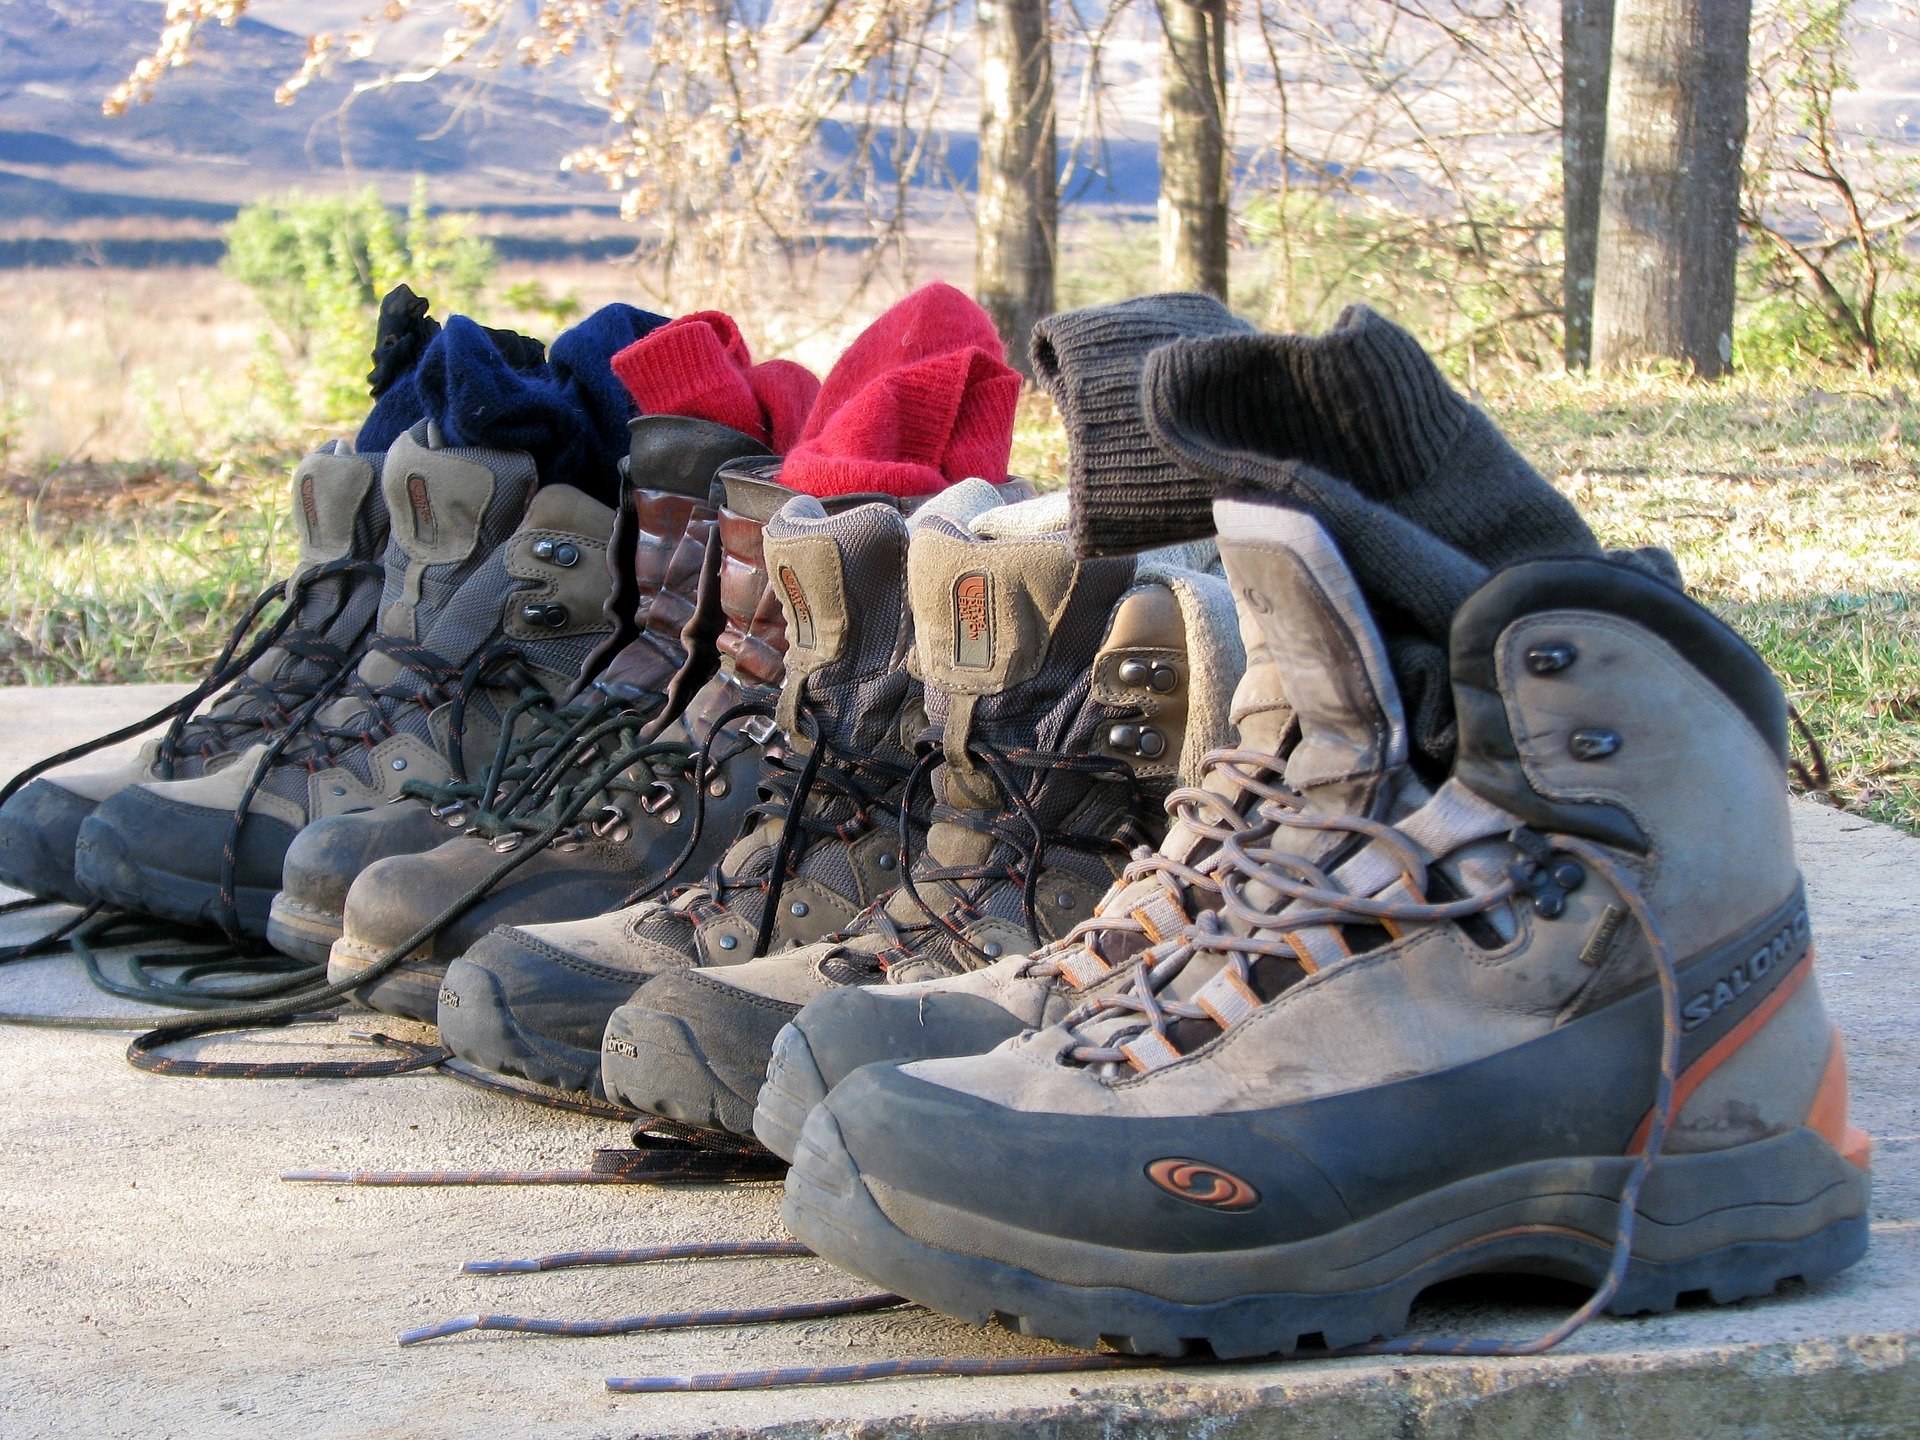 Styrk dine vandrefødder! - DVL Fodterapeut Janne Dehn underviser DVL's i fødder, sko og fodpleje. Læs hendes 5 bedste råd til at dine fødder klar til vandreturen.